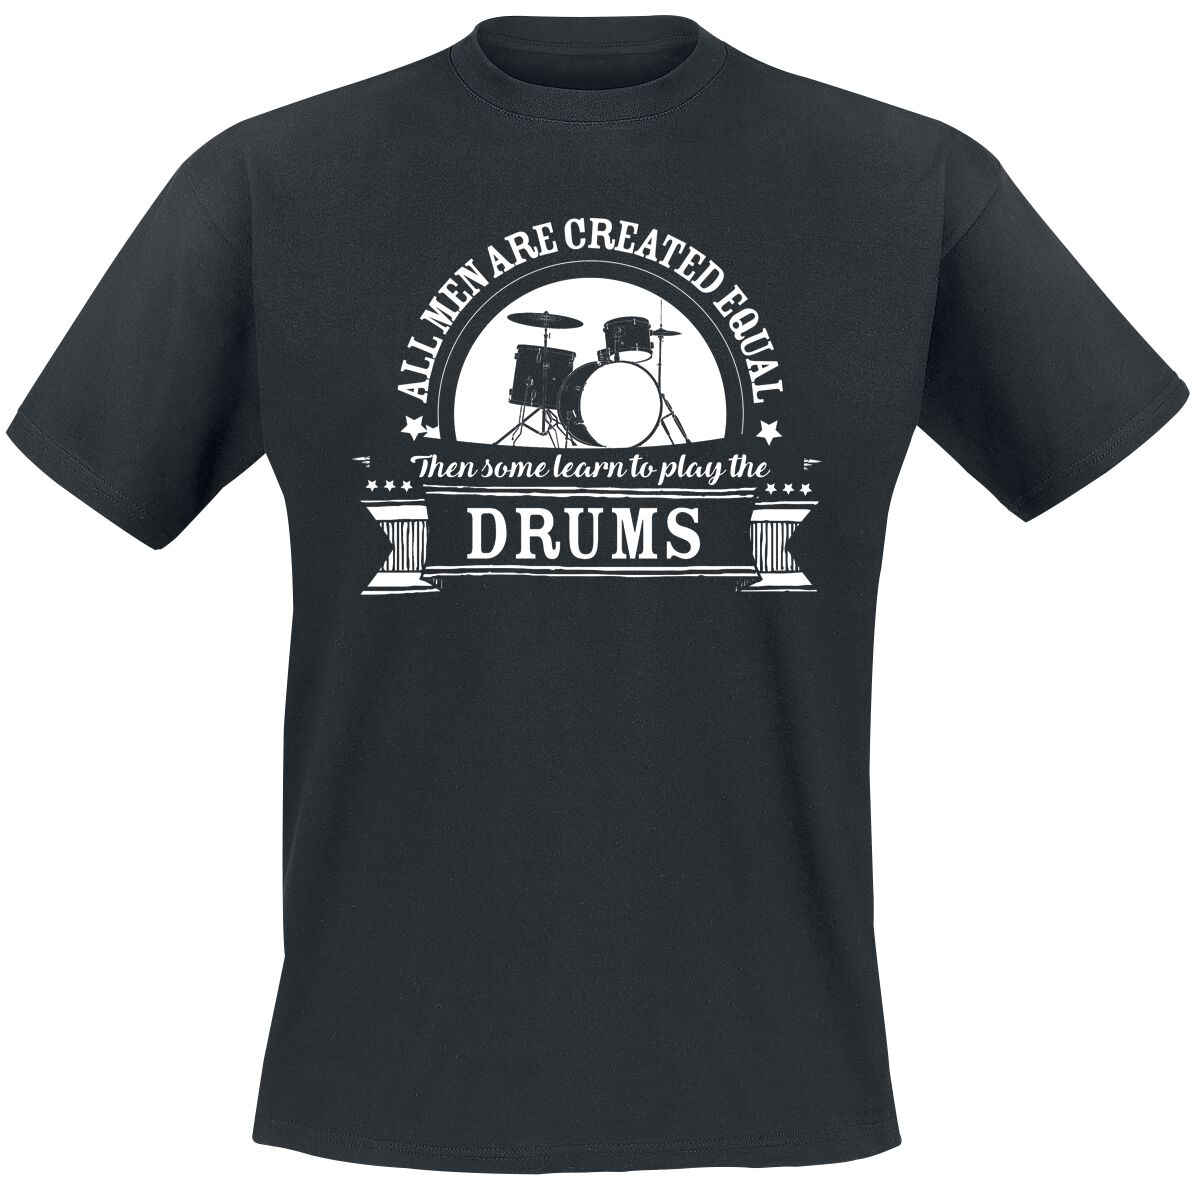 Sprüche T-Shirt - All Men Are Equal Then Some learn To Play The Drums - L bis 5XL - für Männer - Größe 3XL - schwarz